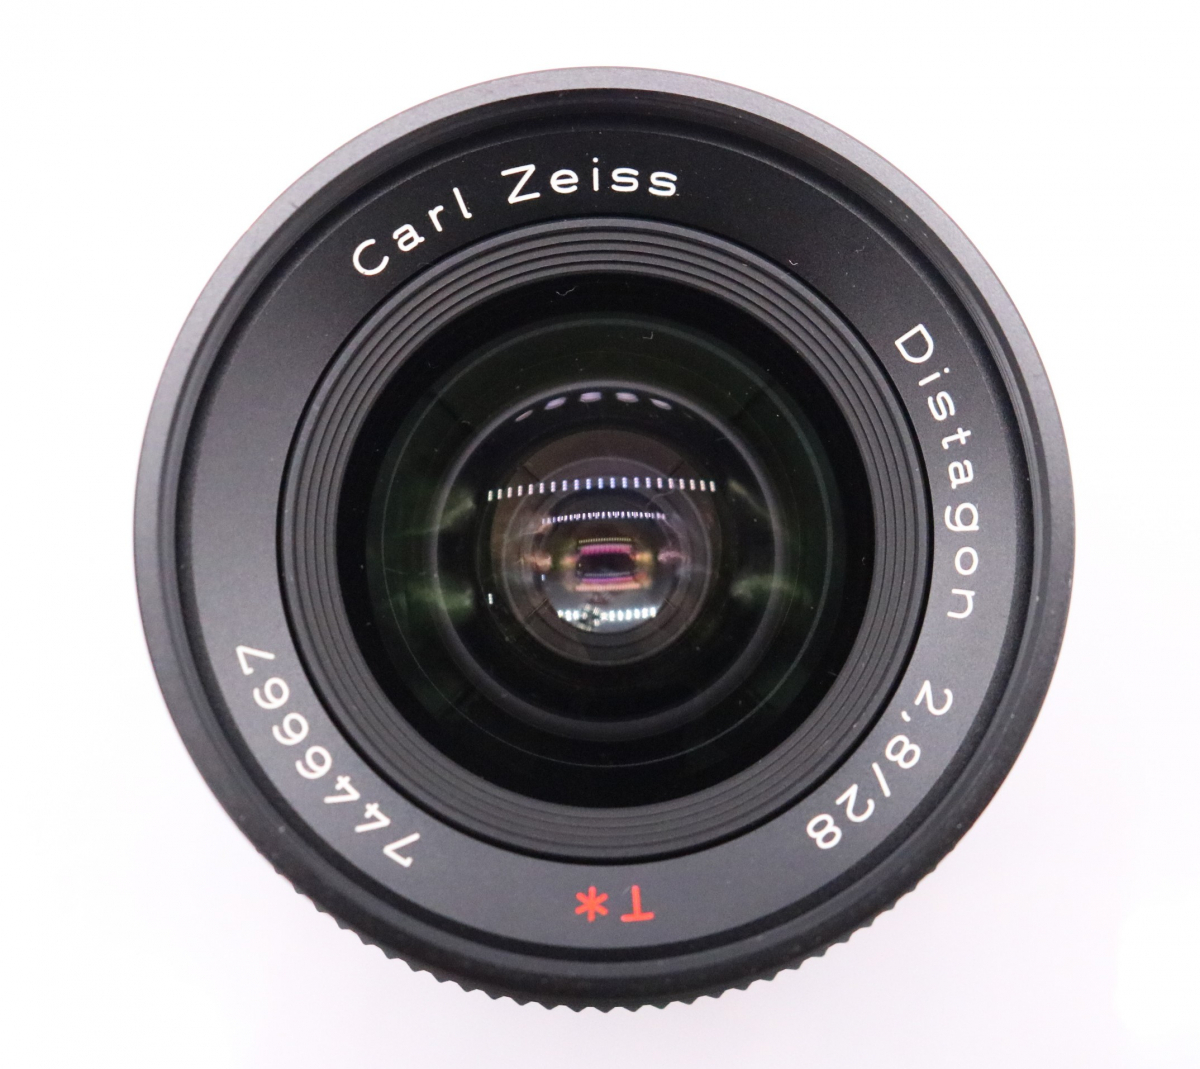 【ト滝】CONTAX コンタックス Carl Zeiss Distagon 2,8/28 レンズ カメラレンズ ブラック 収納袋 DE950DEM86